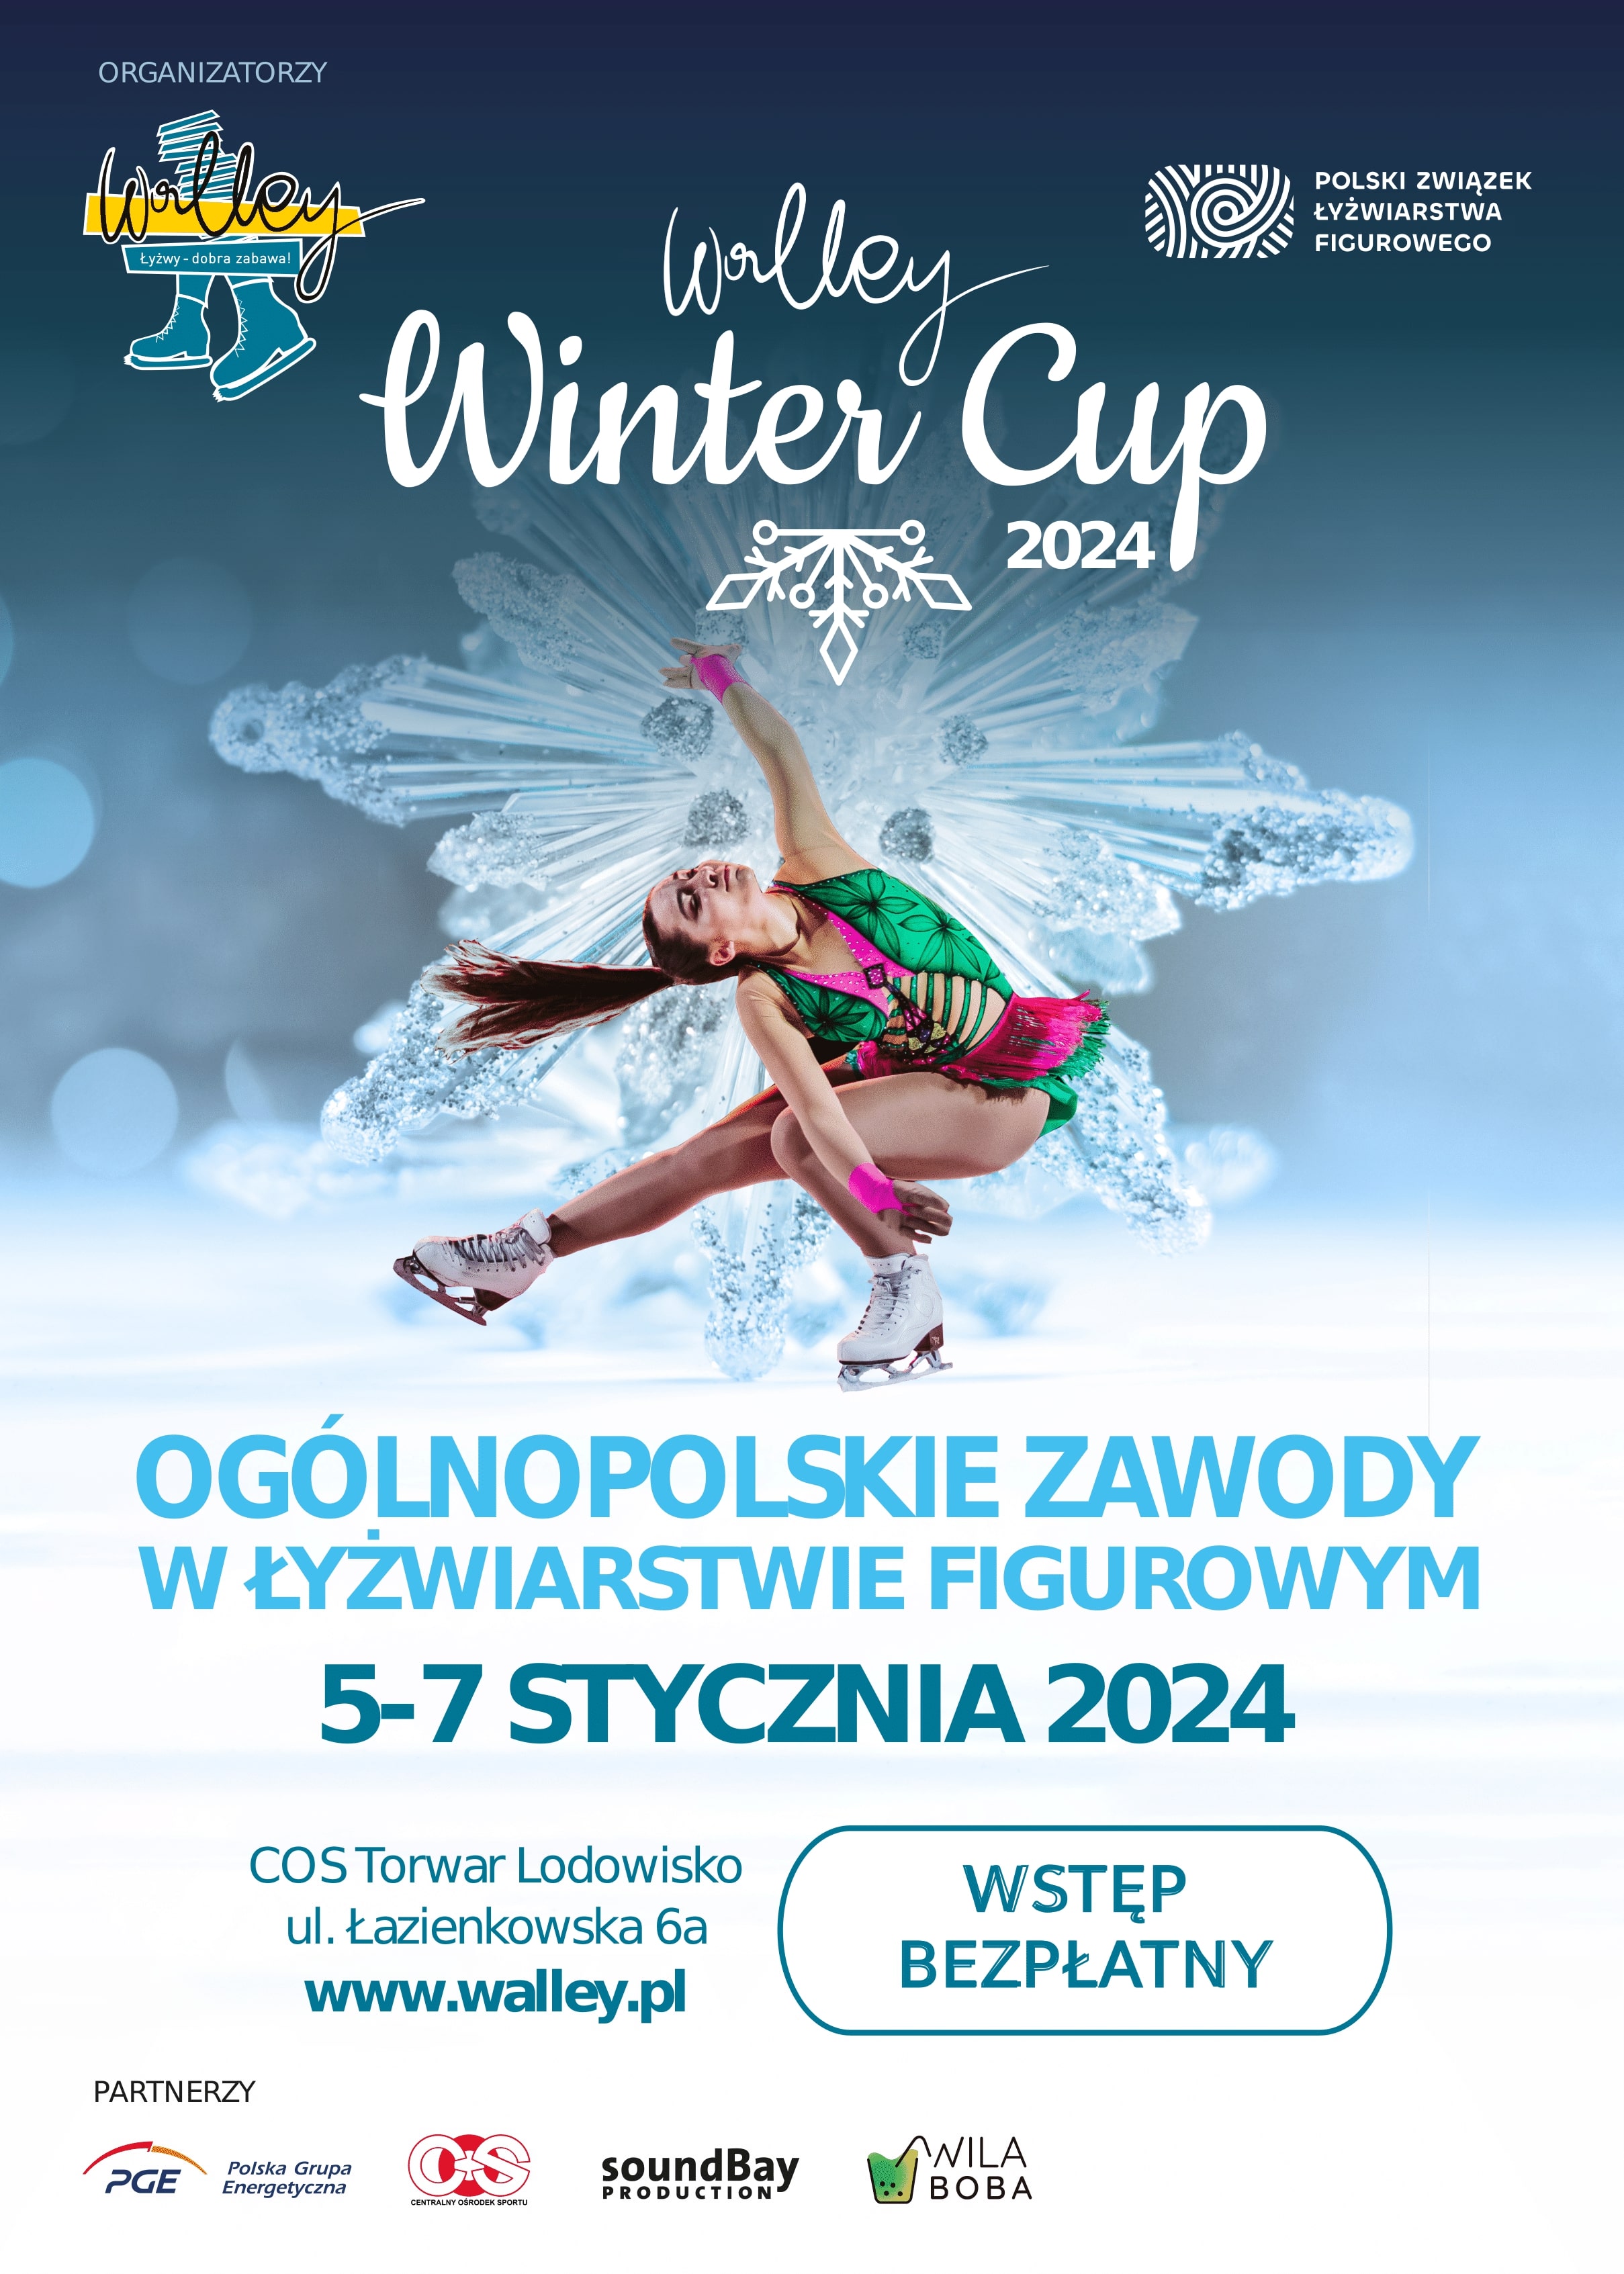 W dniach 5-7 stycznia odbędą się zawody Walley Winter Cup 2024